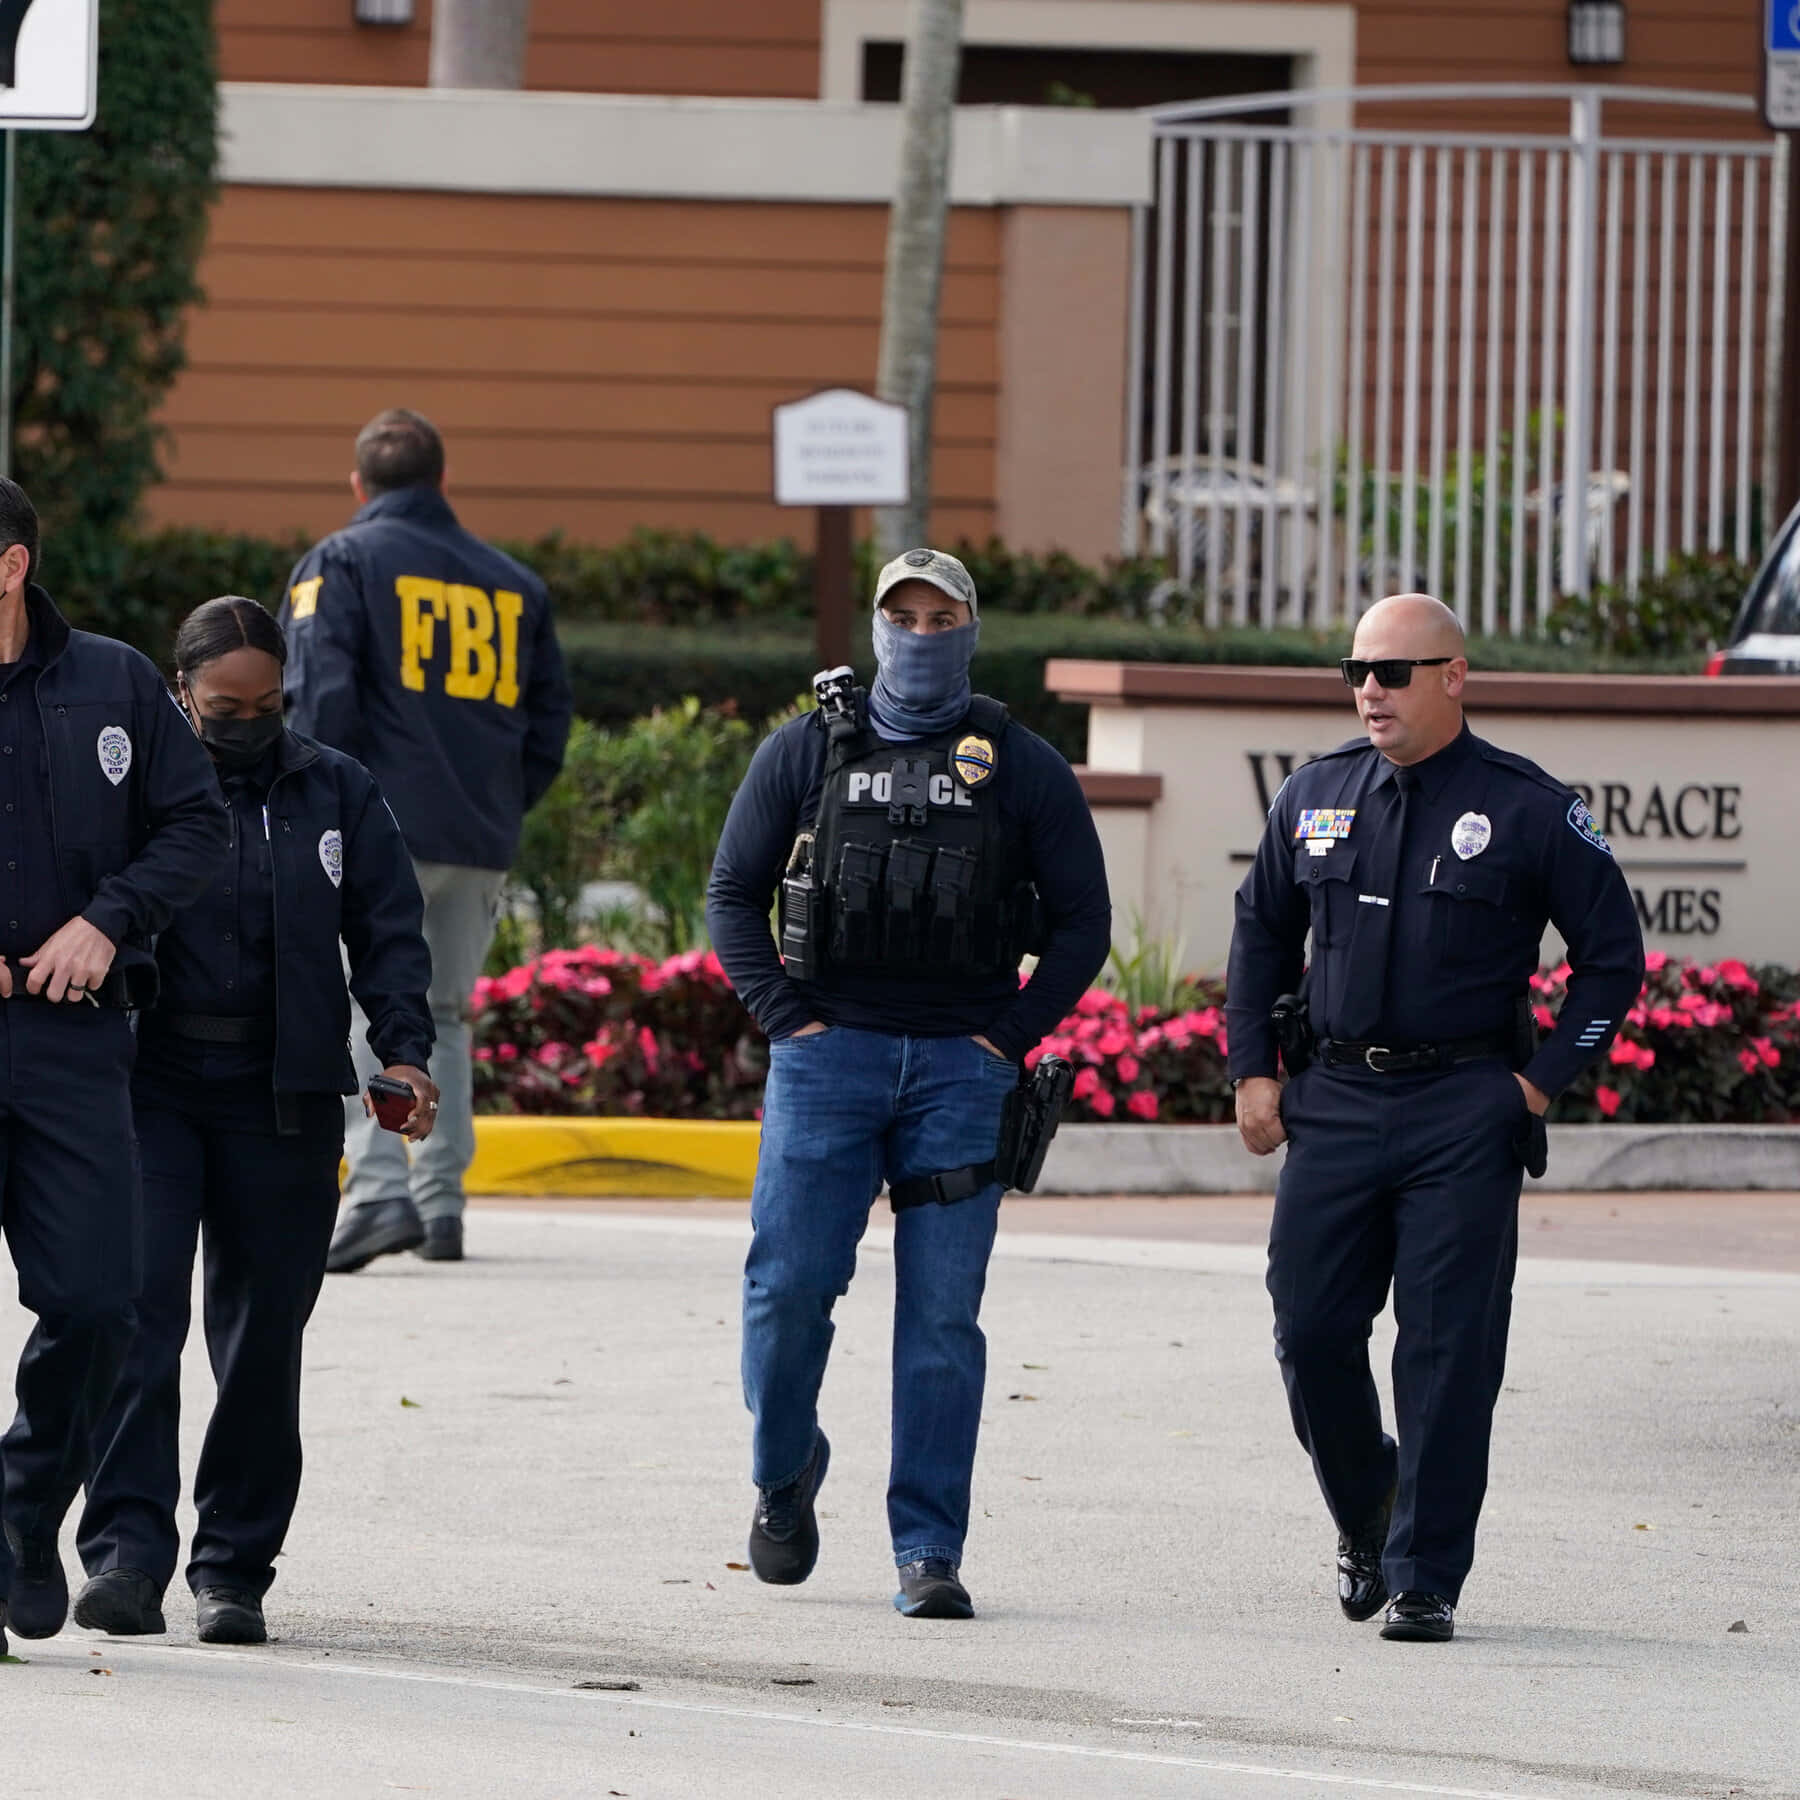 FBI-agenter går ned ad gaden i uniform Wallpaper